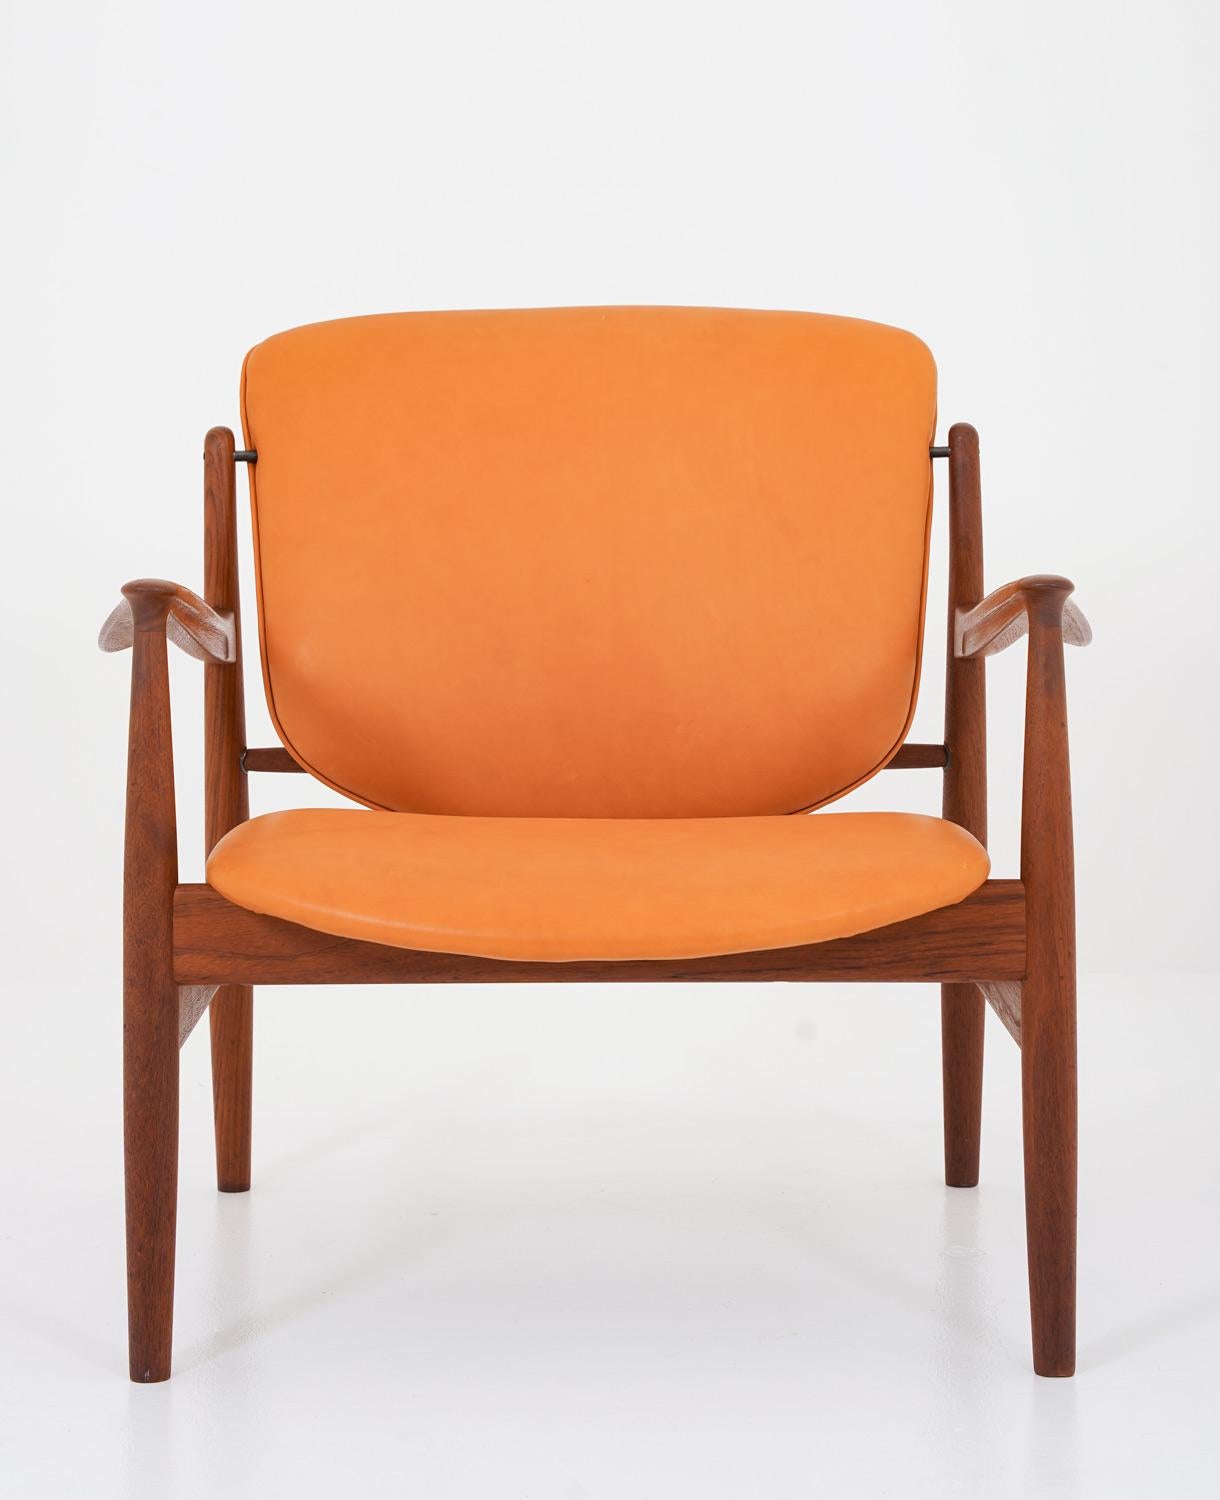 Magnifique chaise longue modèle FD 136 de Finn Juhls pour France & Daverkosen, Danemark.
Cette chaise est composée d'un cadre en teck aux formes magnifiques, supportant des coussins en cuir de couleur cognac. 

Condit : Très bon état avec de légers